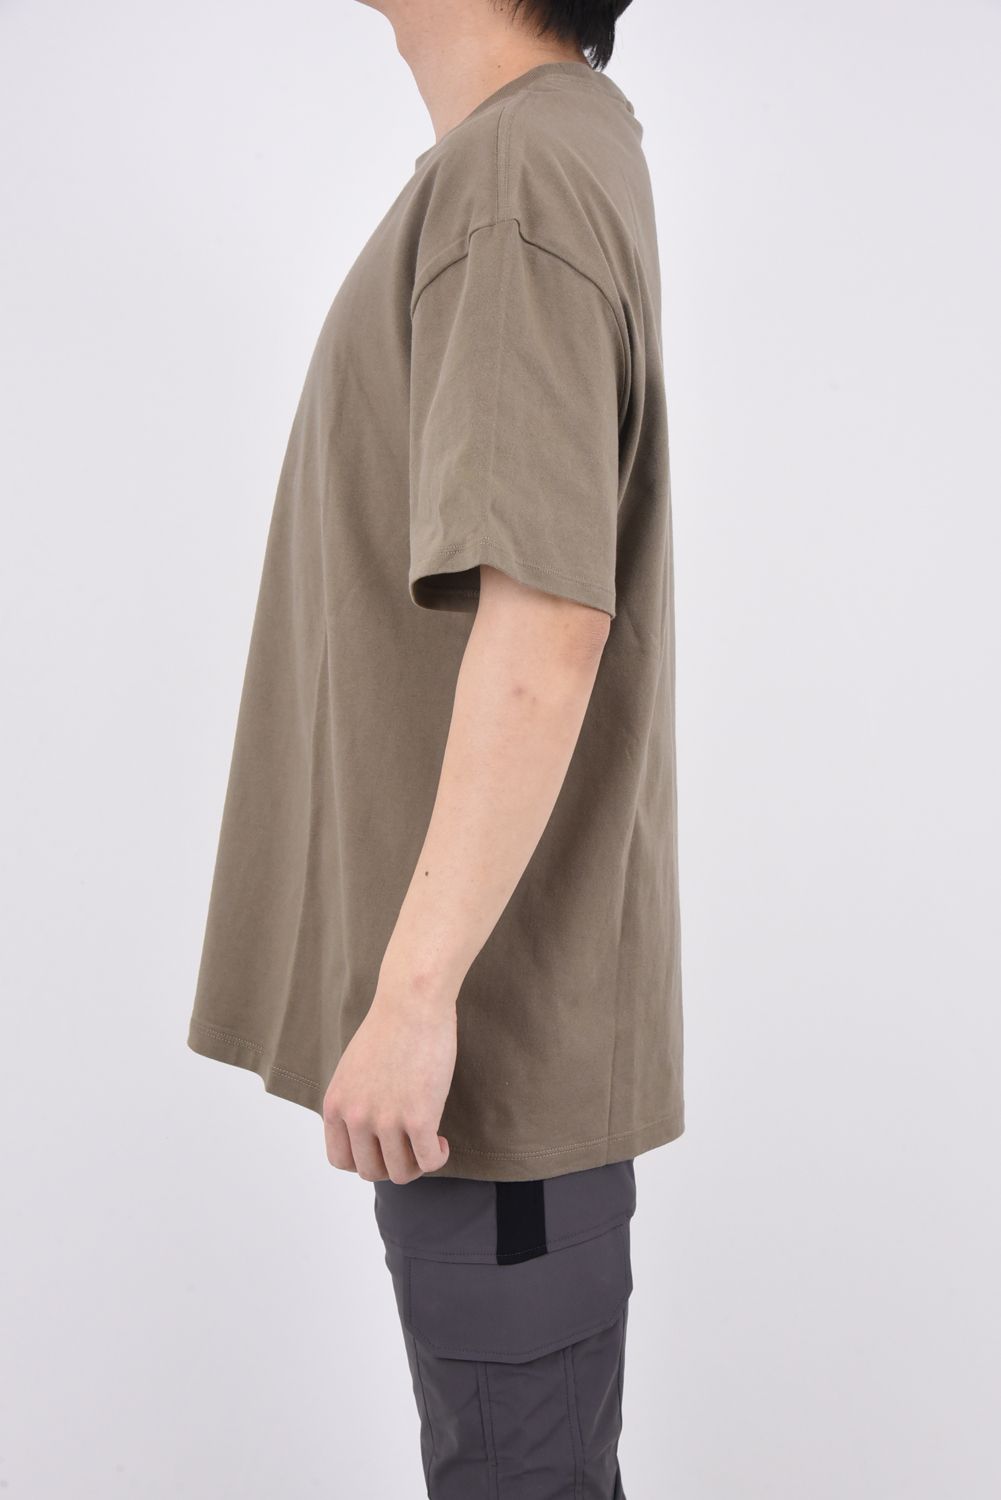 FOG ESSENTIALS - ESSENTIALS BACK LOGO T-Shirt / フロント ロゴ 半袖 